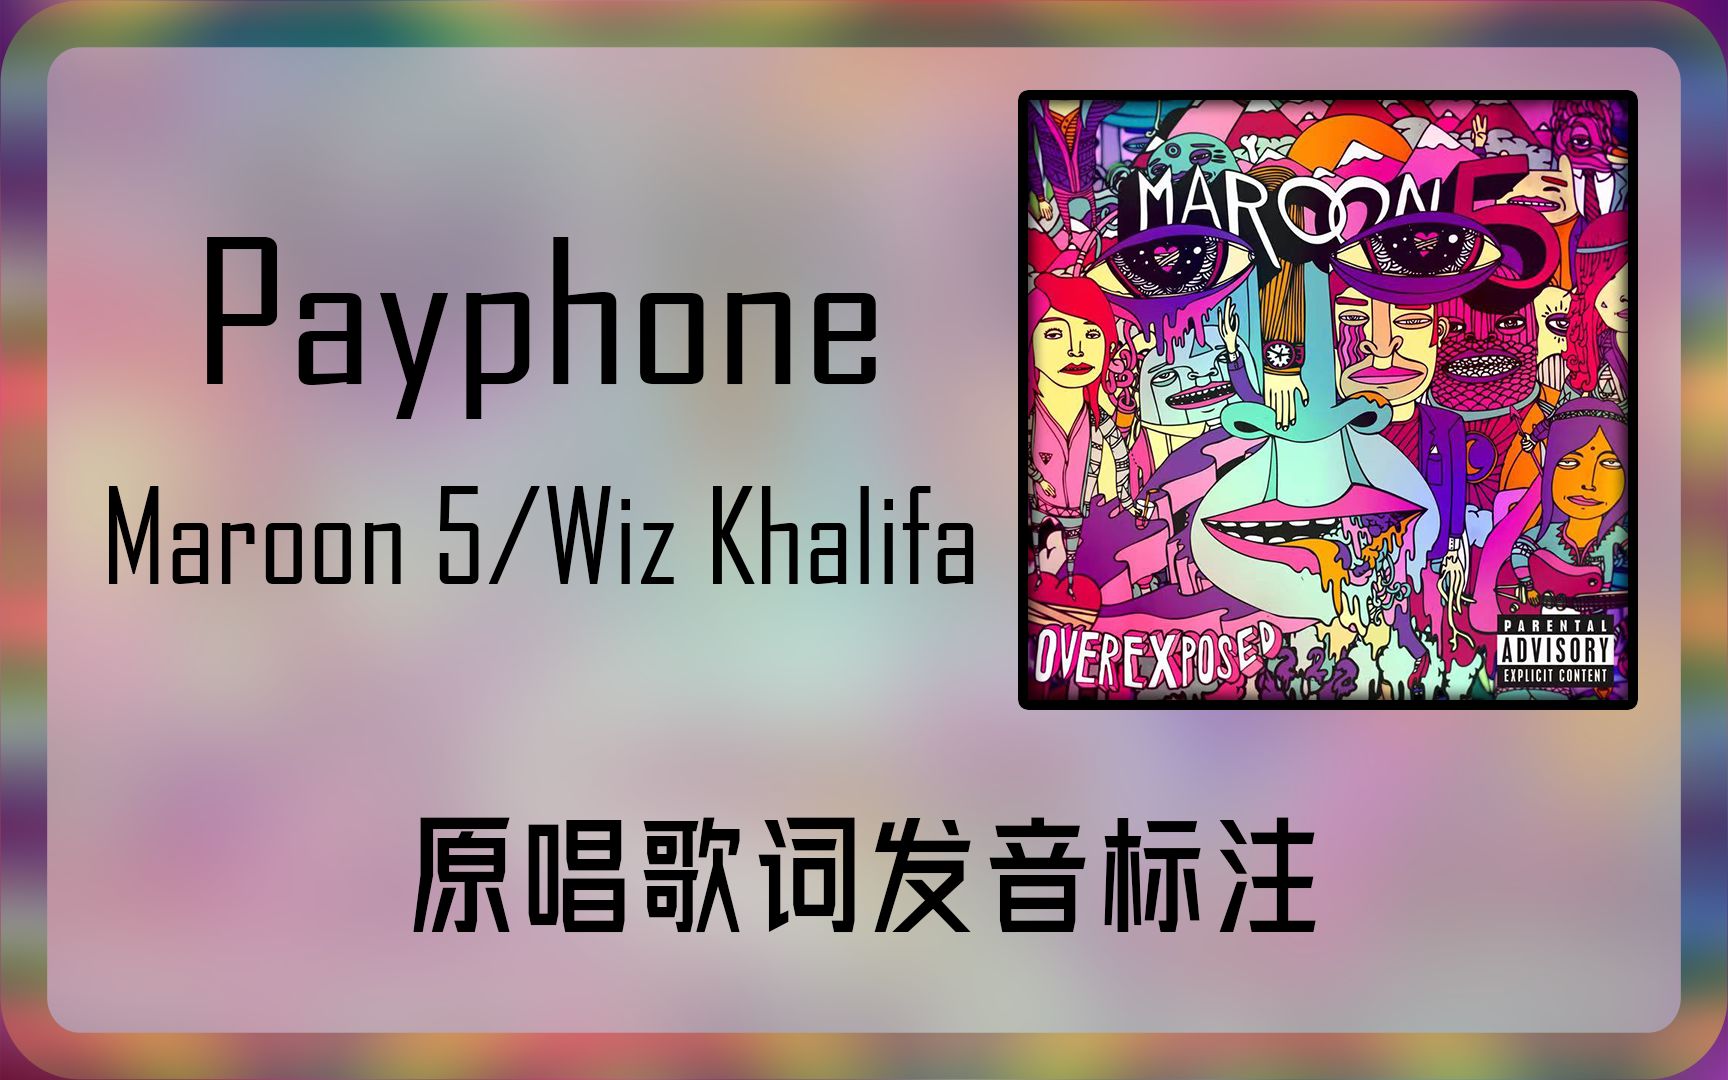 跟着原唱学原曲：Payphone - Maroon 5/Wiz Khalifa歌词发音标注 童话般的二人生活变得遥不可及